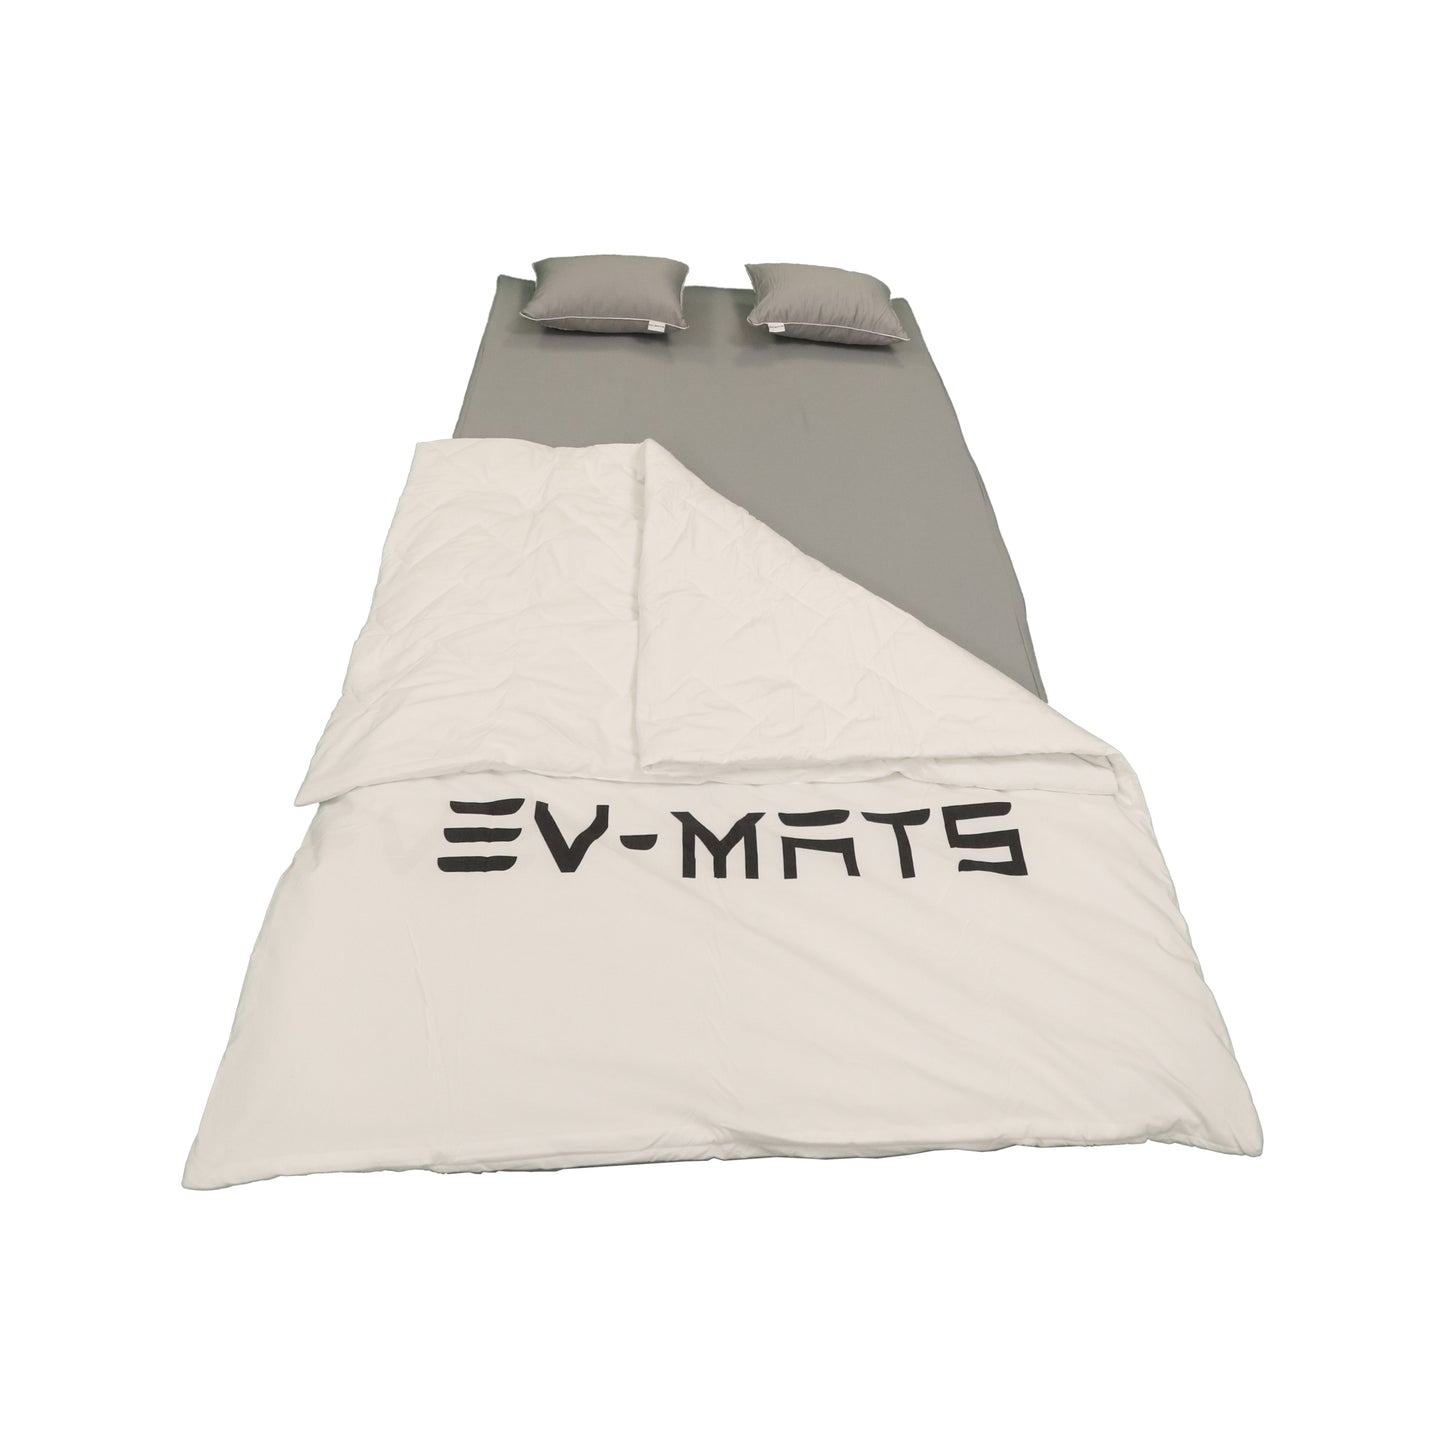 EV-MATS Basic CAMP SET pour Tesla Model 3 comprend le matelas Tesla, le sac étanche qui s'adapte dans le coffre arrière de la Tesla Model 3, un drap, une couette, 2 oreillers et une taie d'oreiller